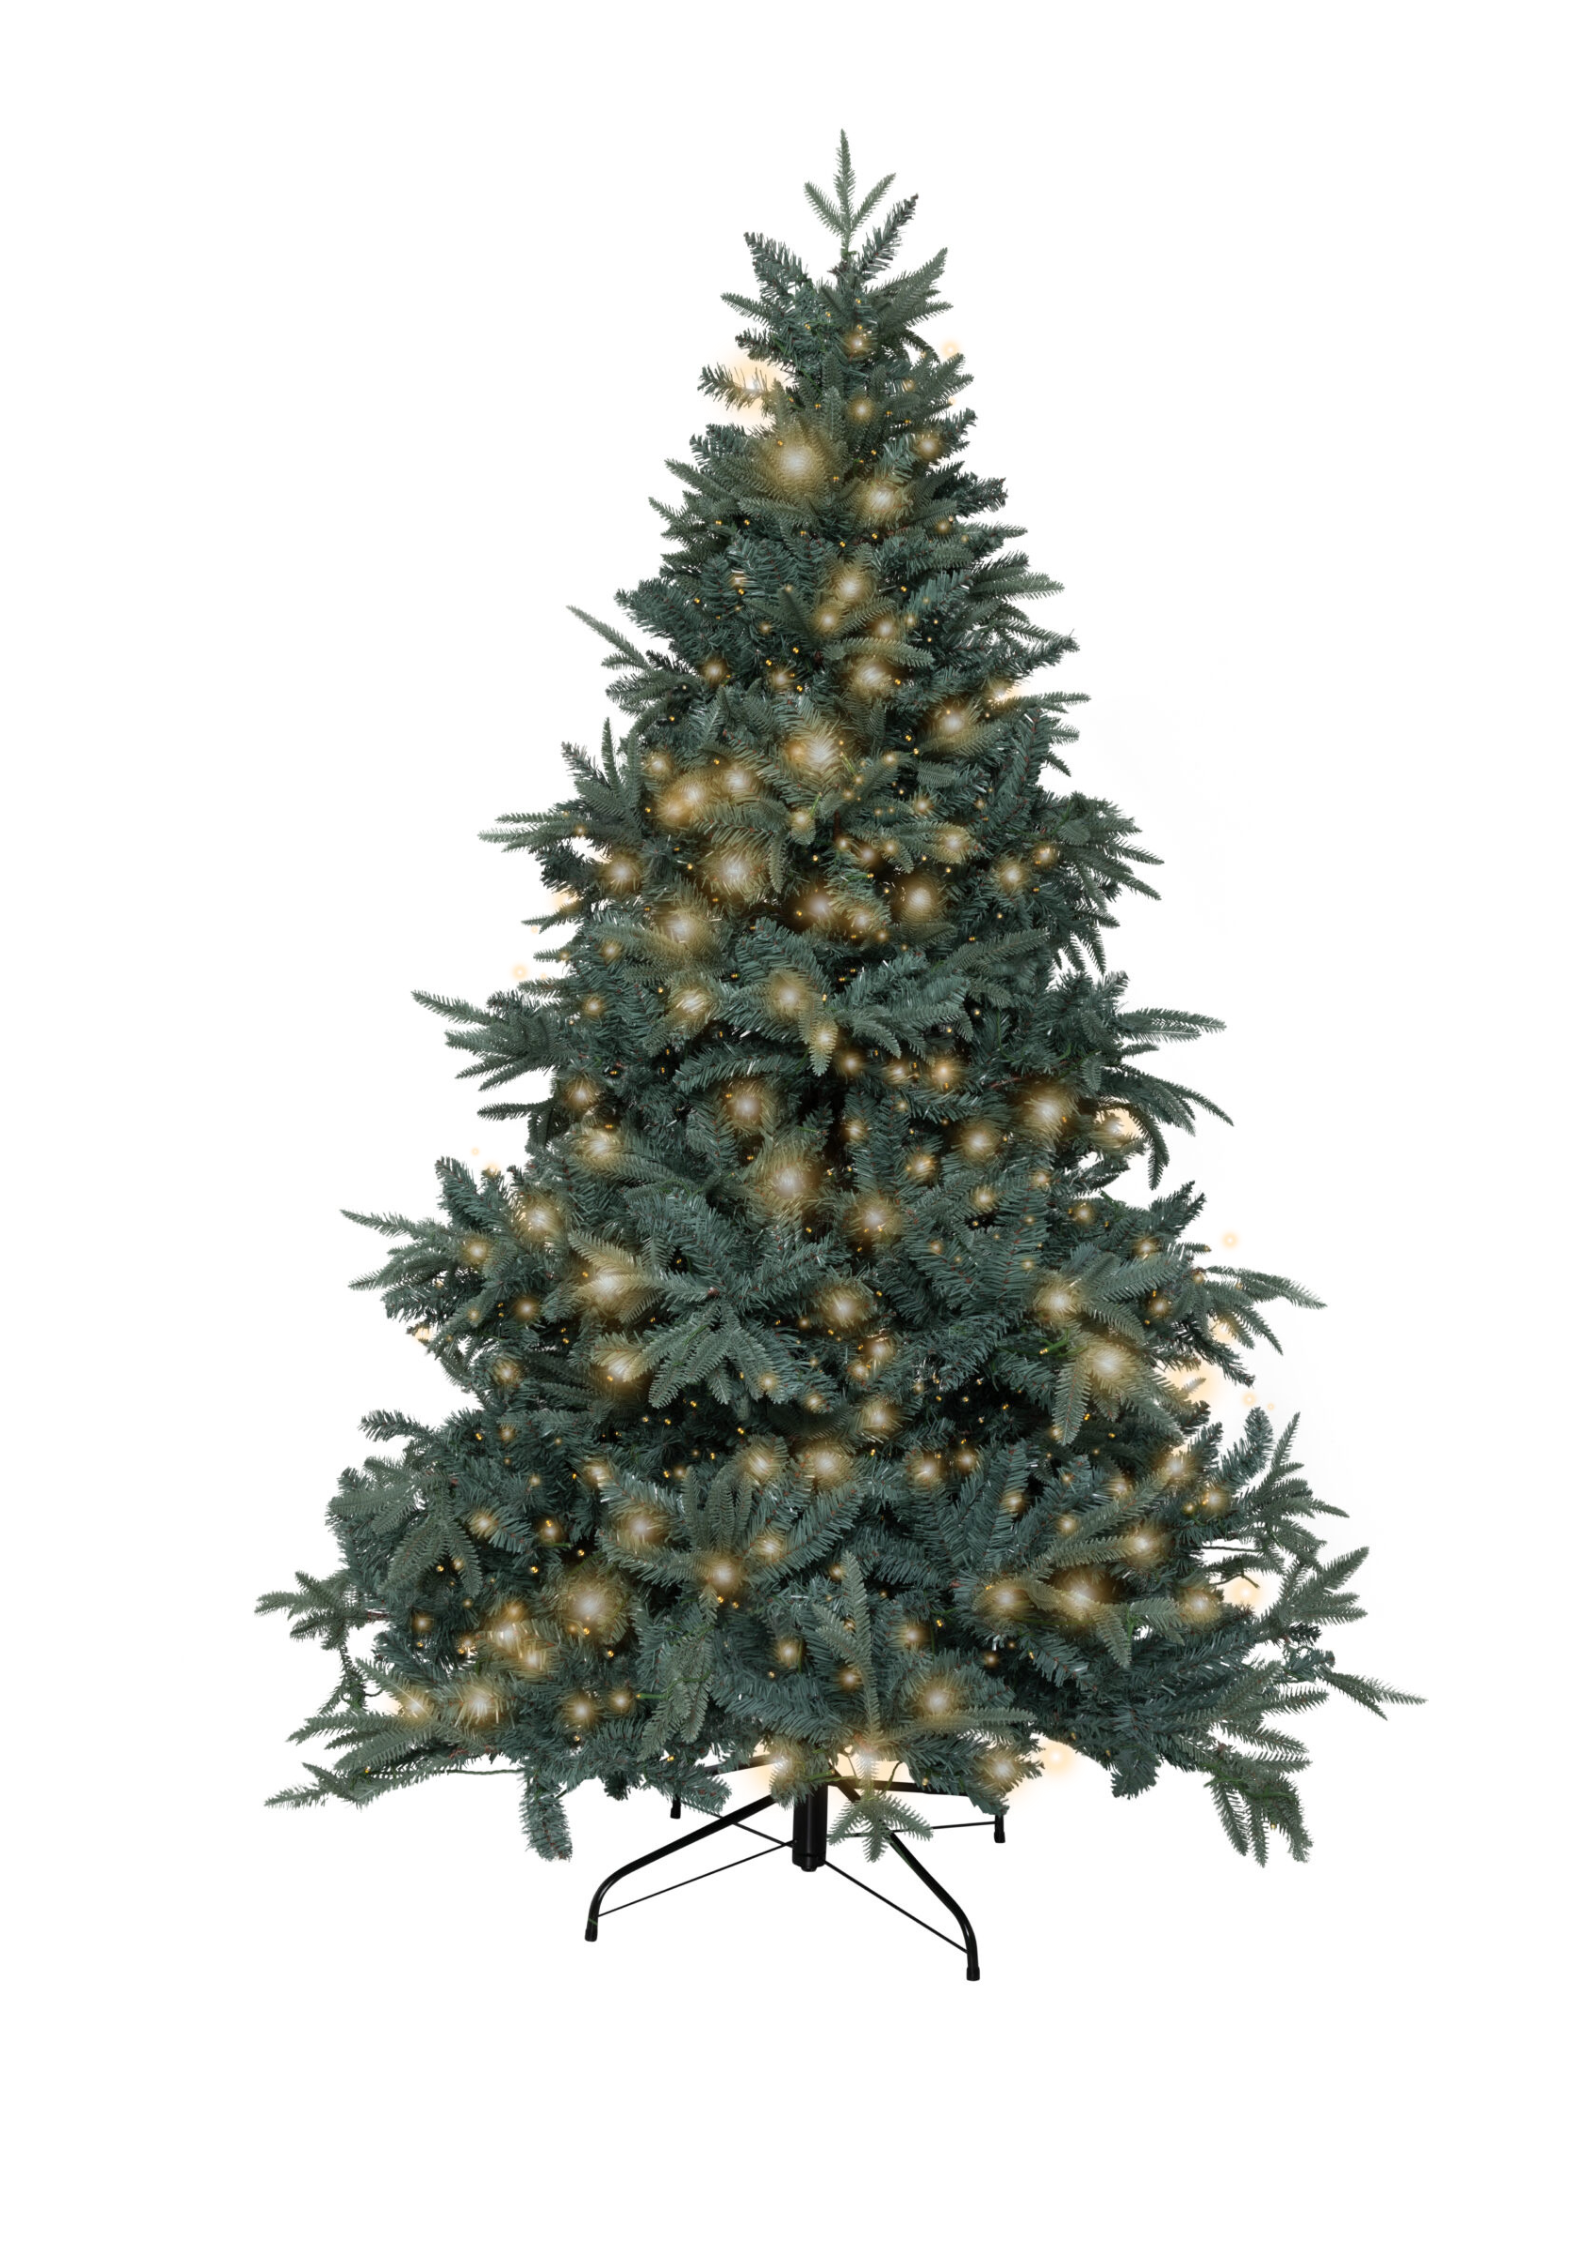 Verenigen legaal Sanctie Tisdale blauwspar kerstboom met verlichting - KJ Kunstkerstbomen